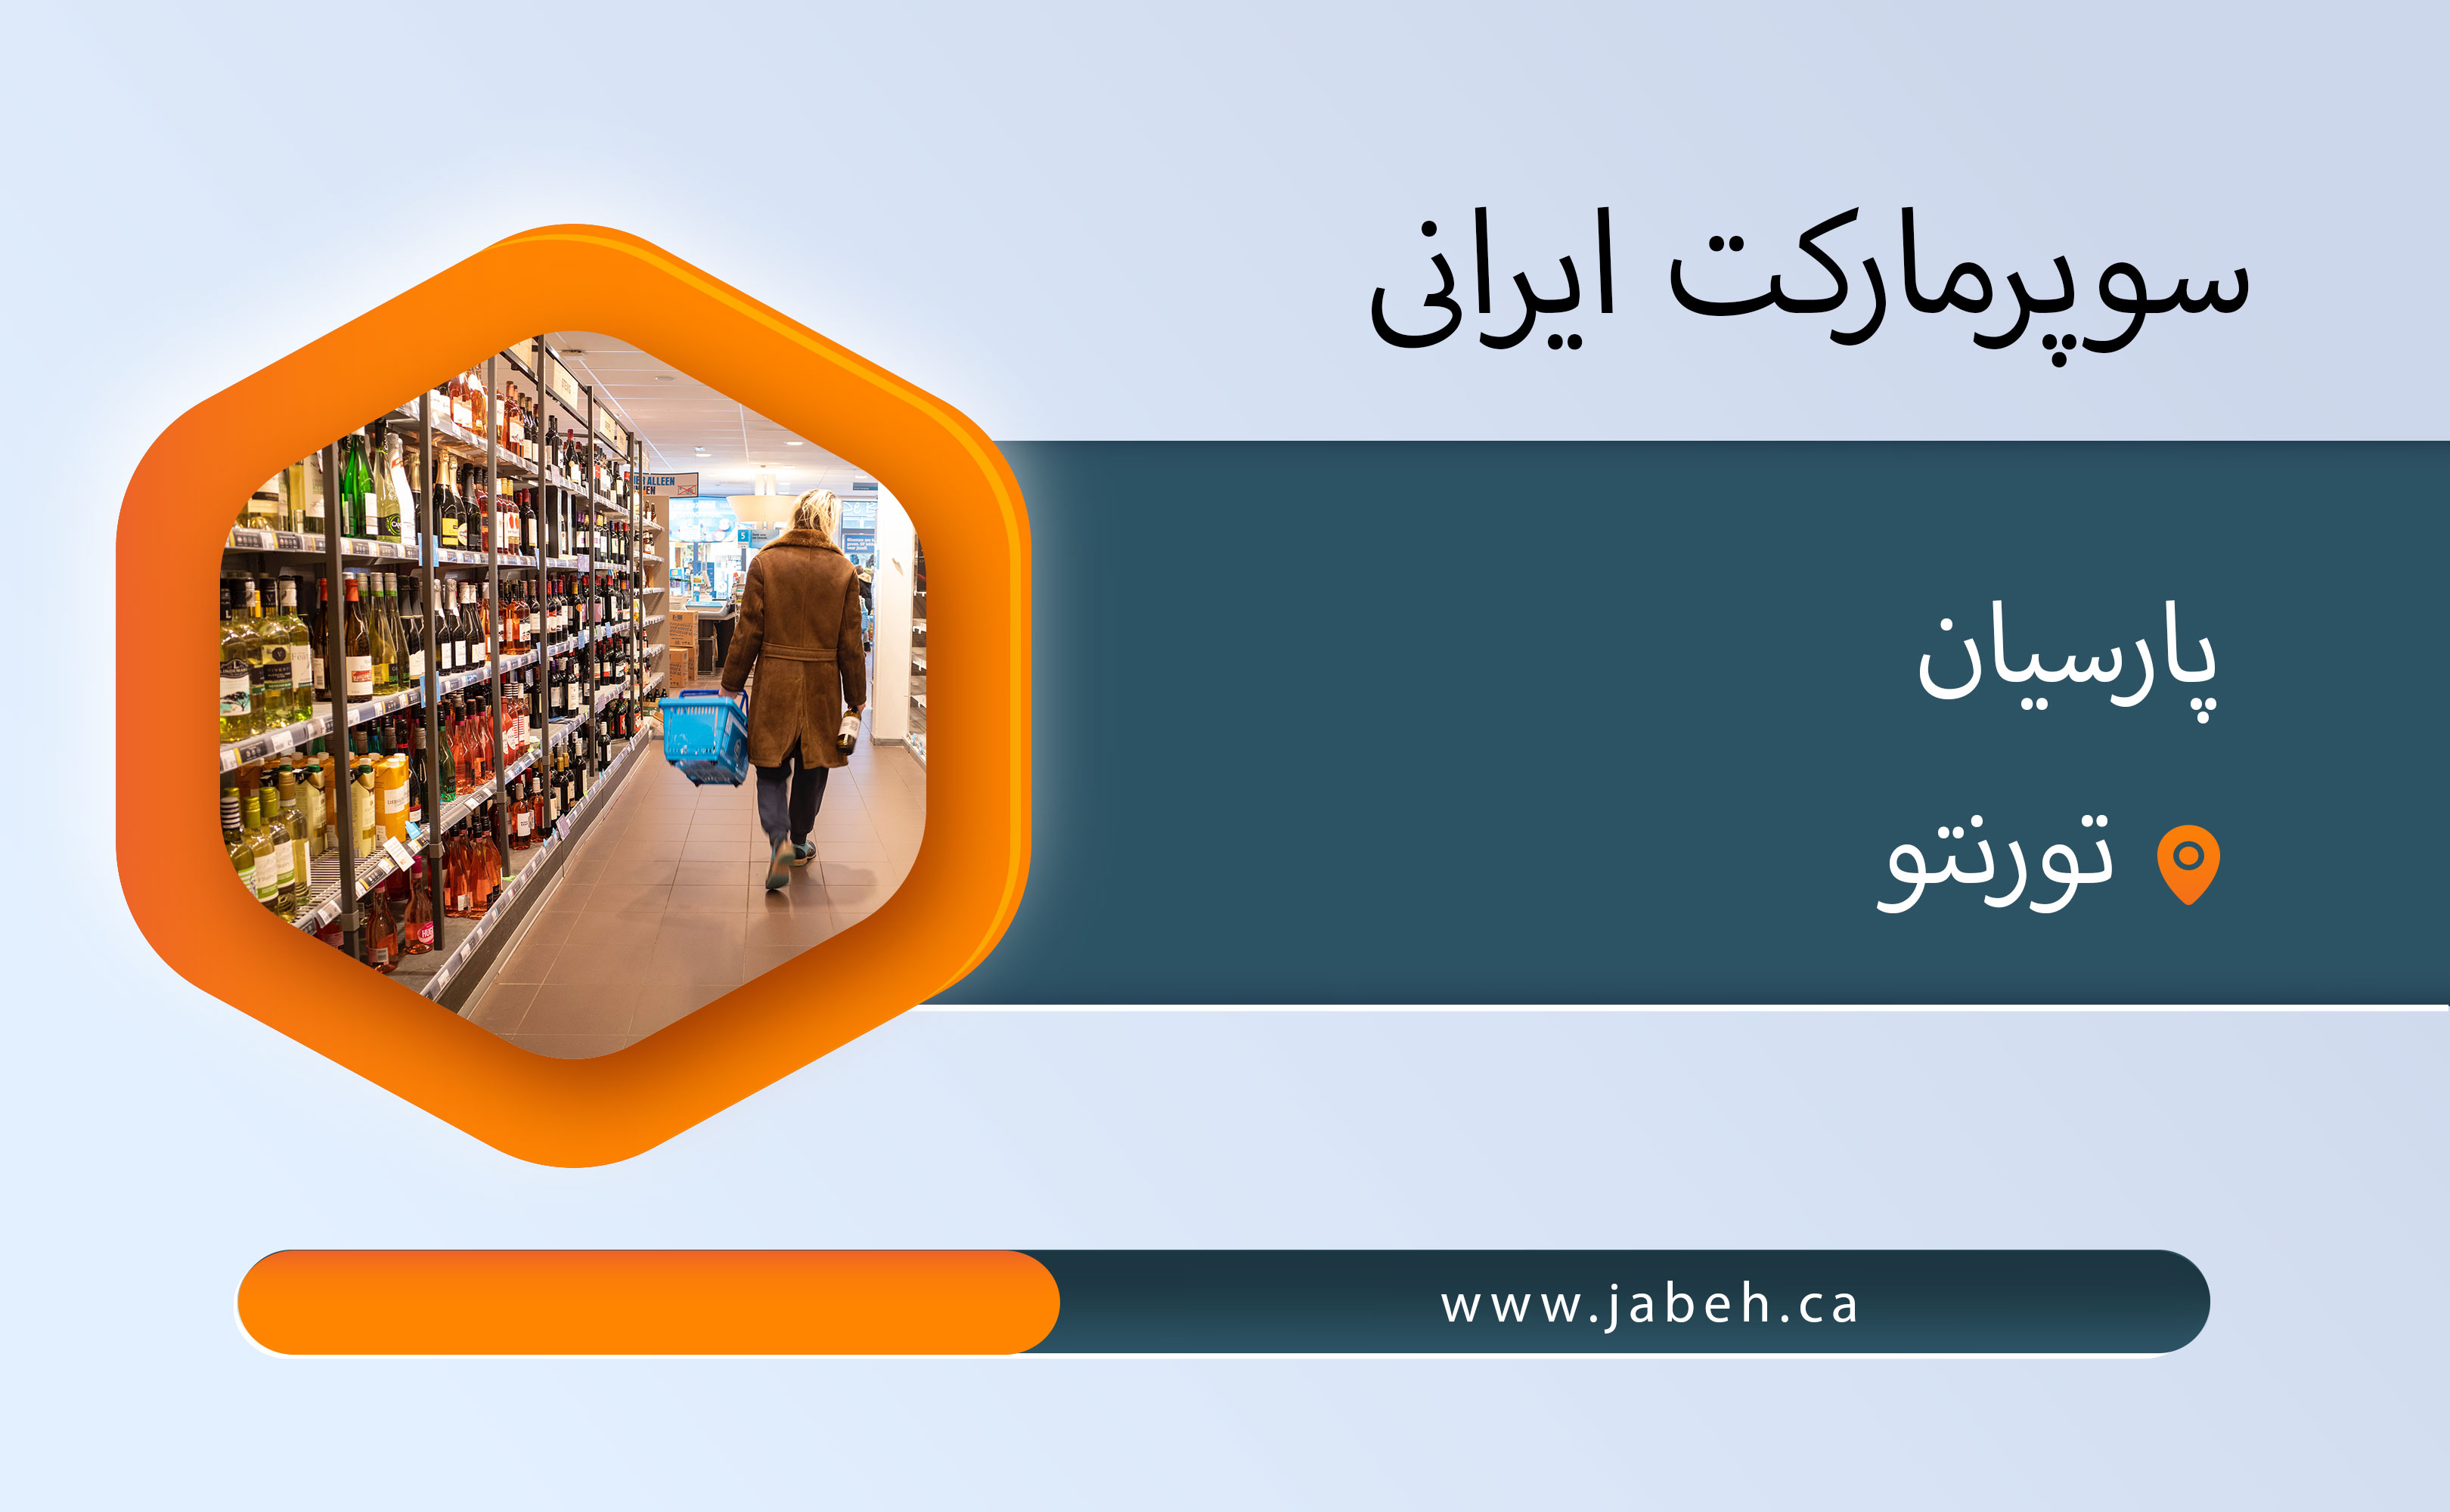 سوپرمارکت ایرانی پارسیان در تورنتو